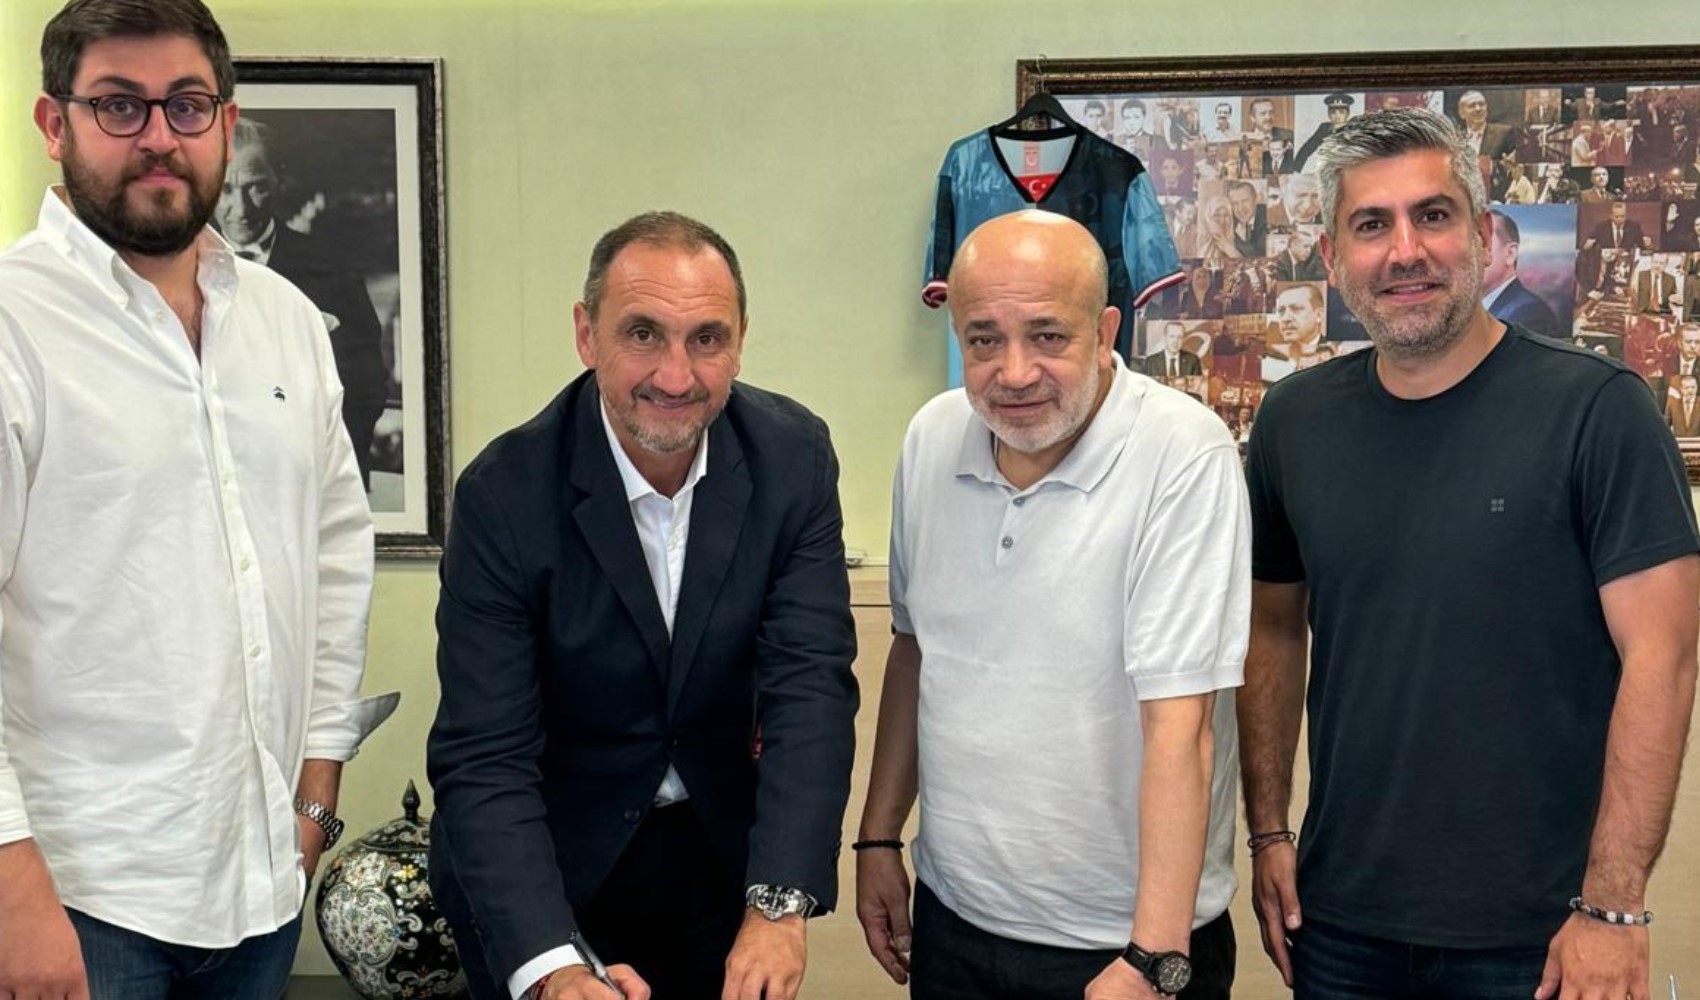 Adana Demirspor'un yeni hocası belli oldu